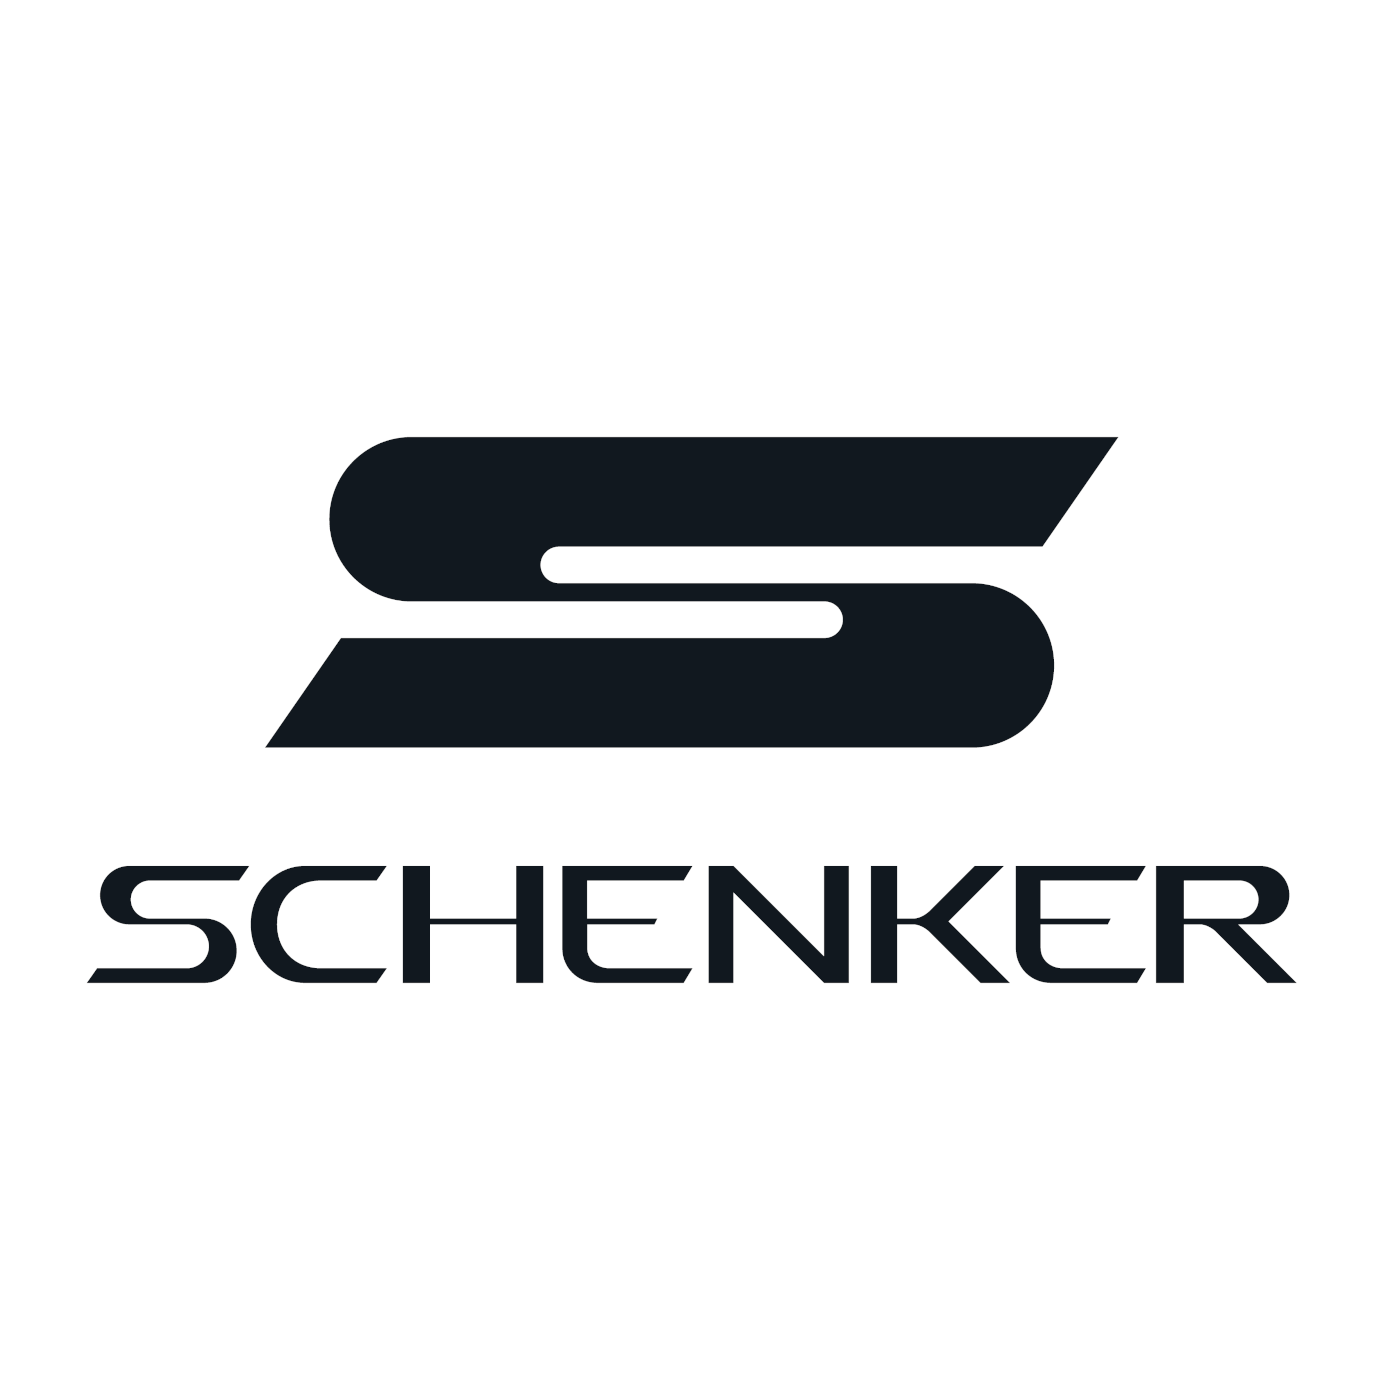 Schenker